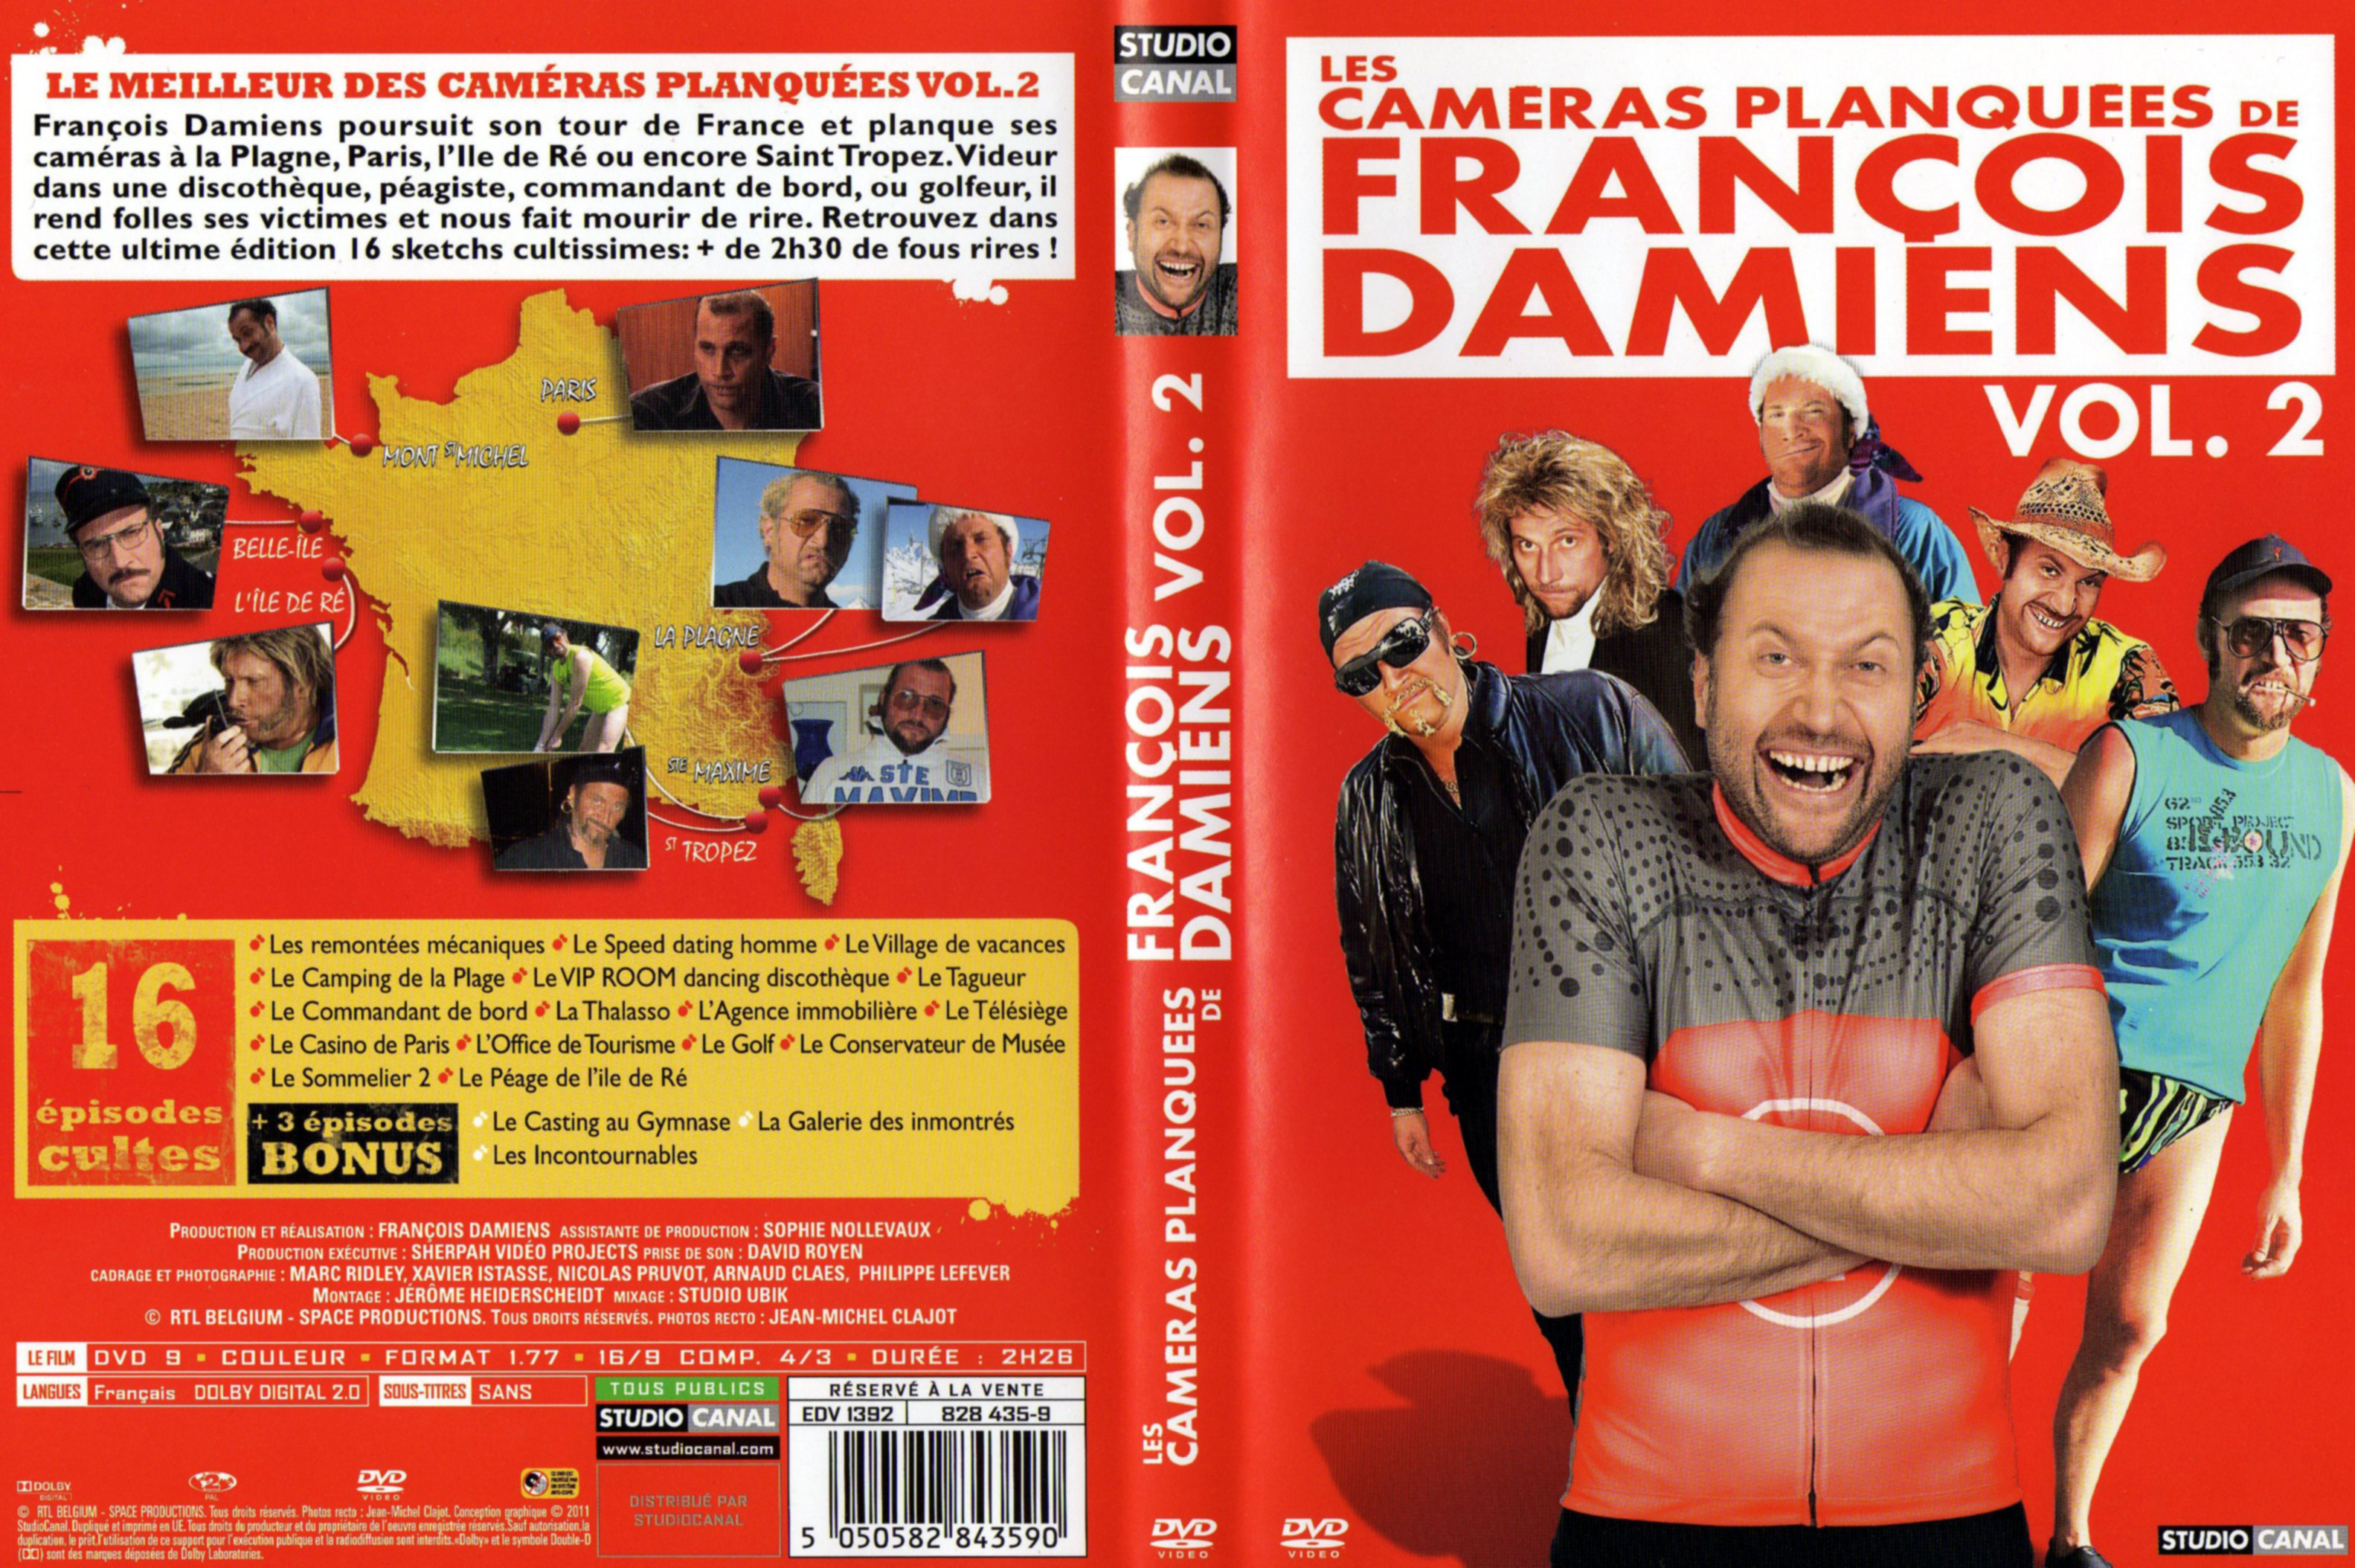 Jaquette DVD Les cameras planques de Francois Damiens vol 2